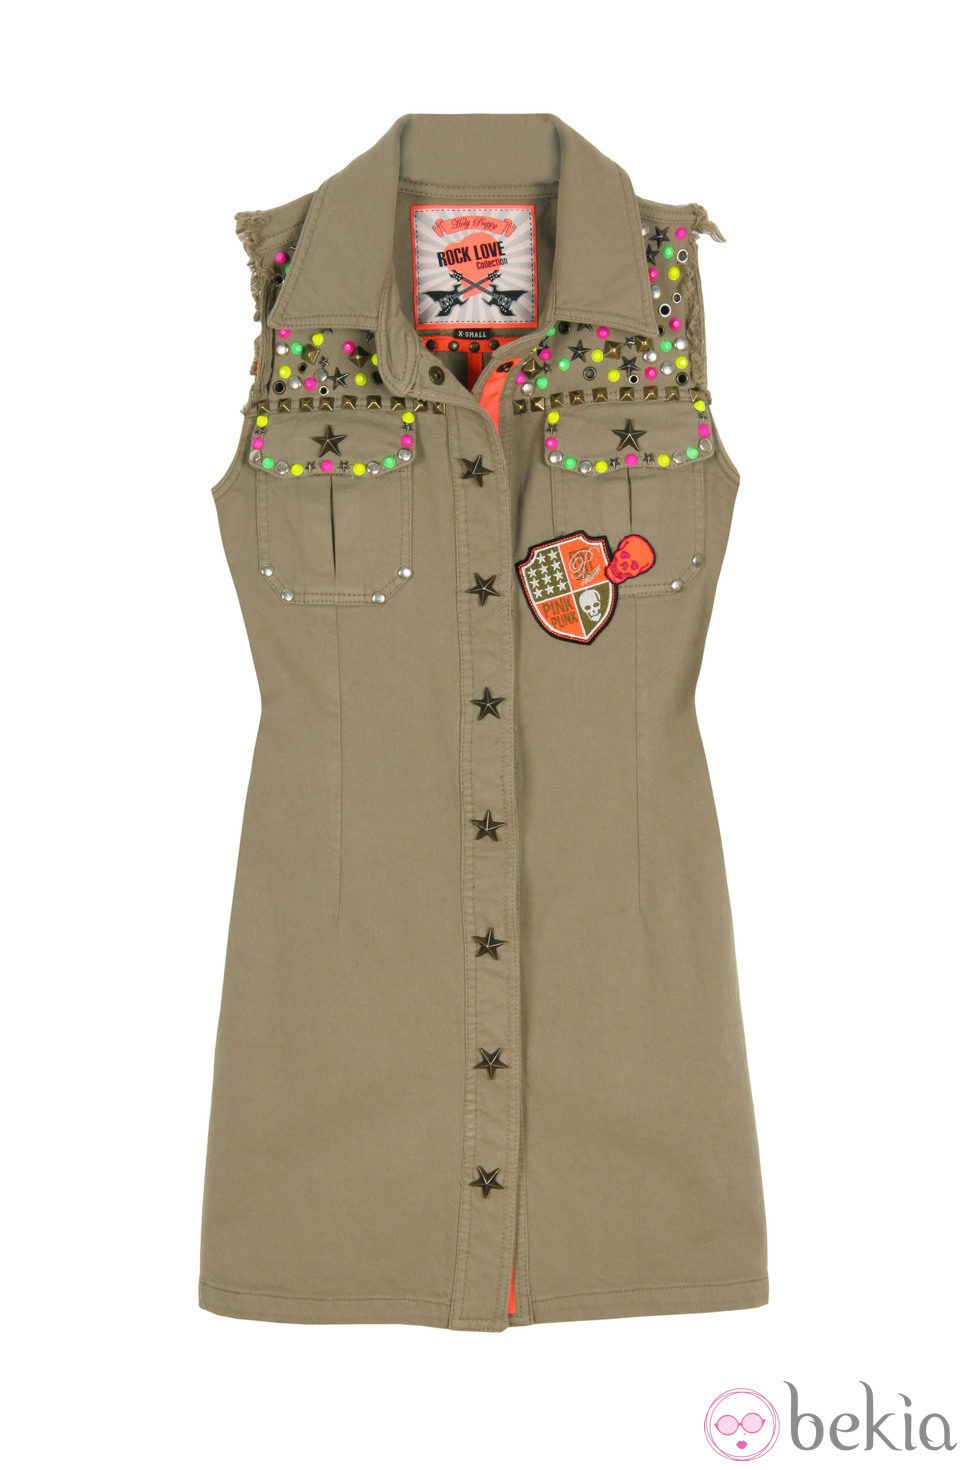 Vestido de botones de la línea 'Militar Chic' de la colección primavera/verano 2013 de Holy Preppy